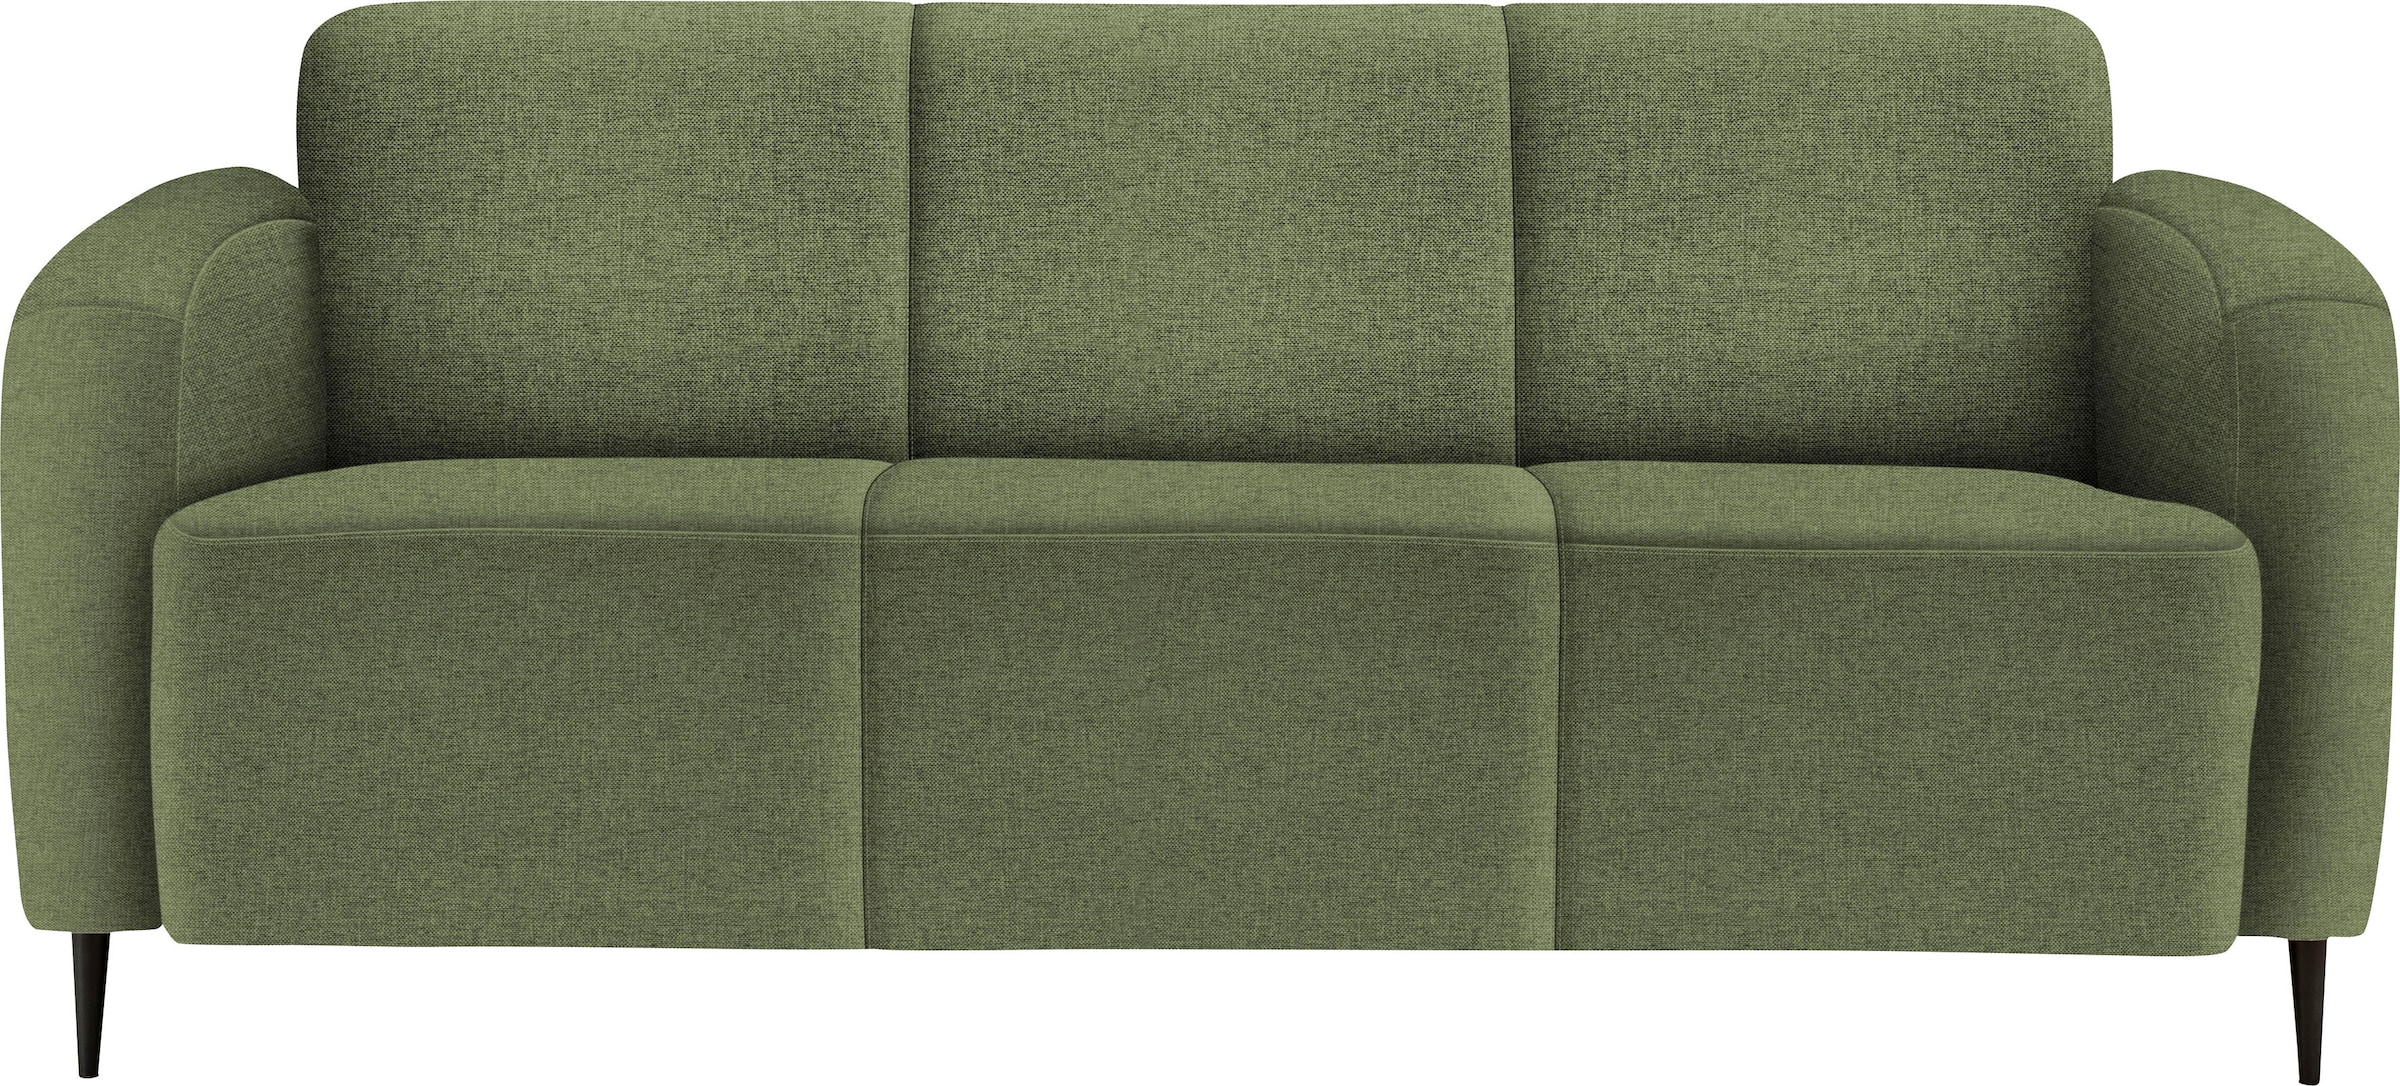 3-Sitzer-Sofa online kaufen bei Quelle